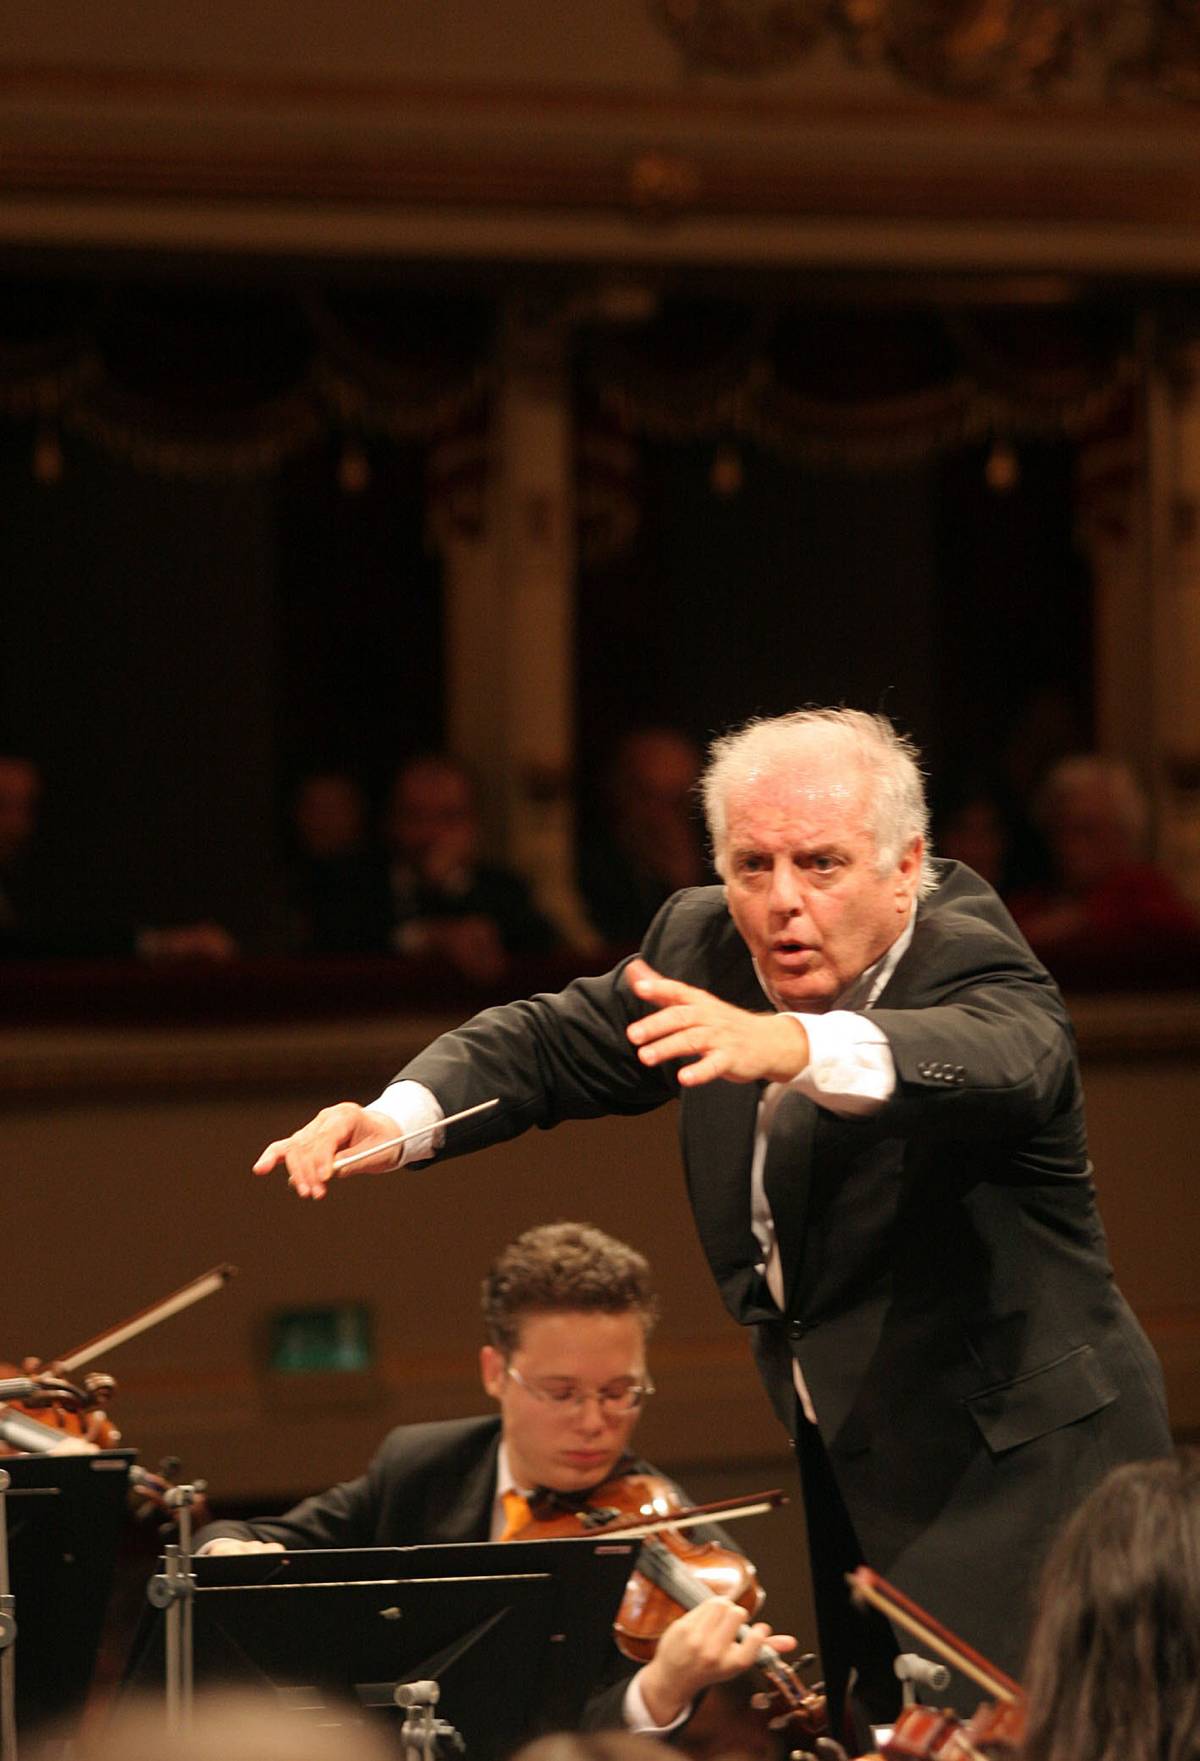 Barenboim direttore musicale alla Scala 
Sarà al timone del teatro fino al 2016